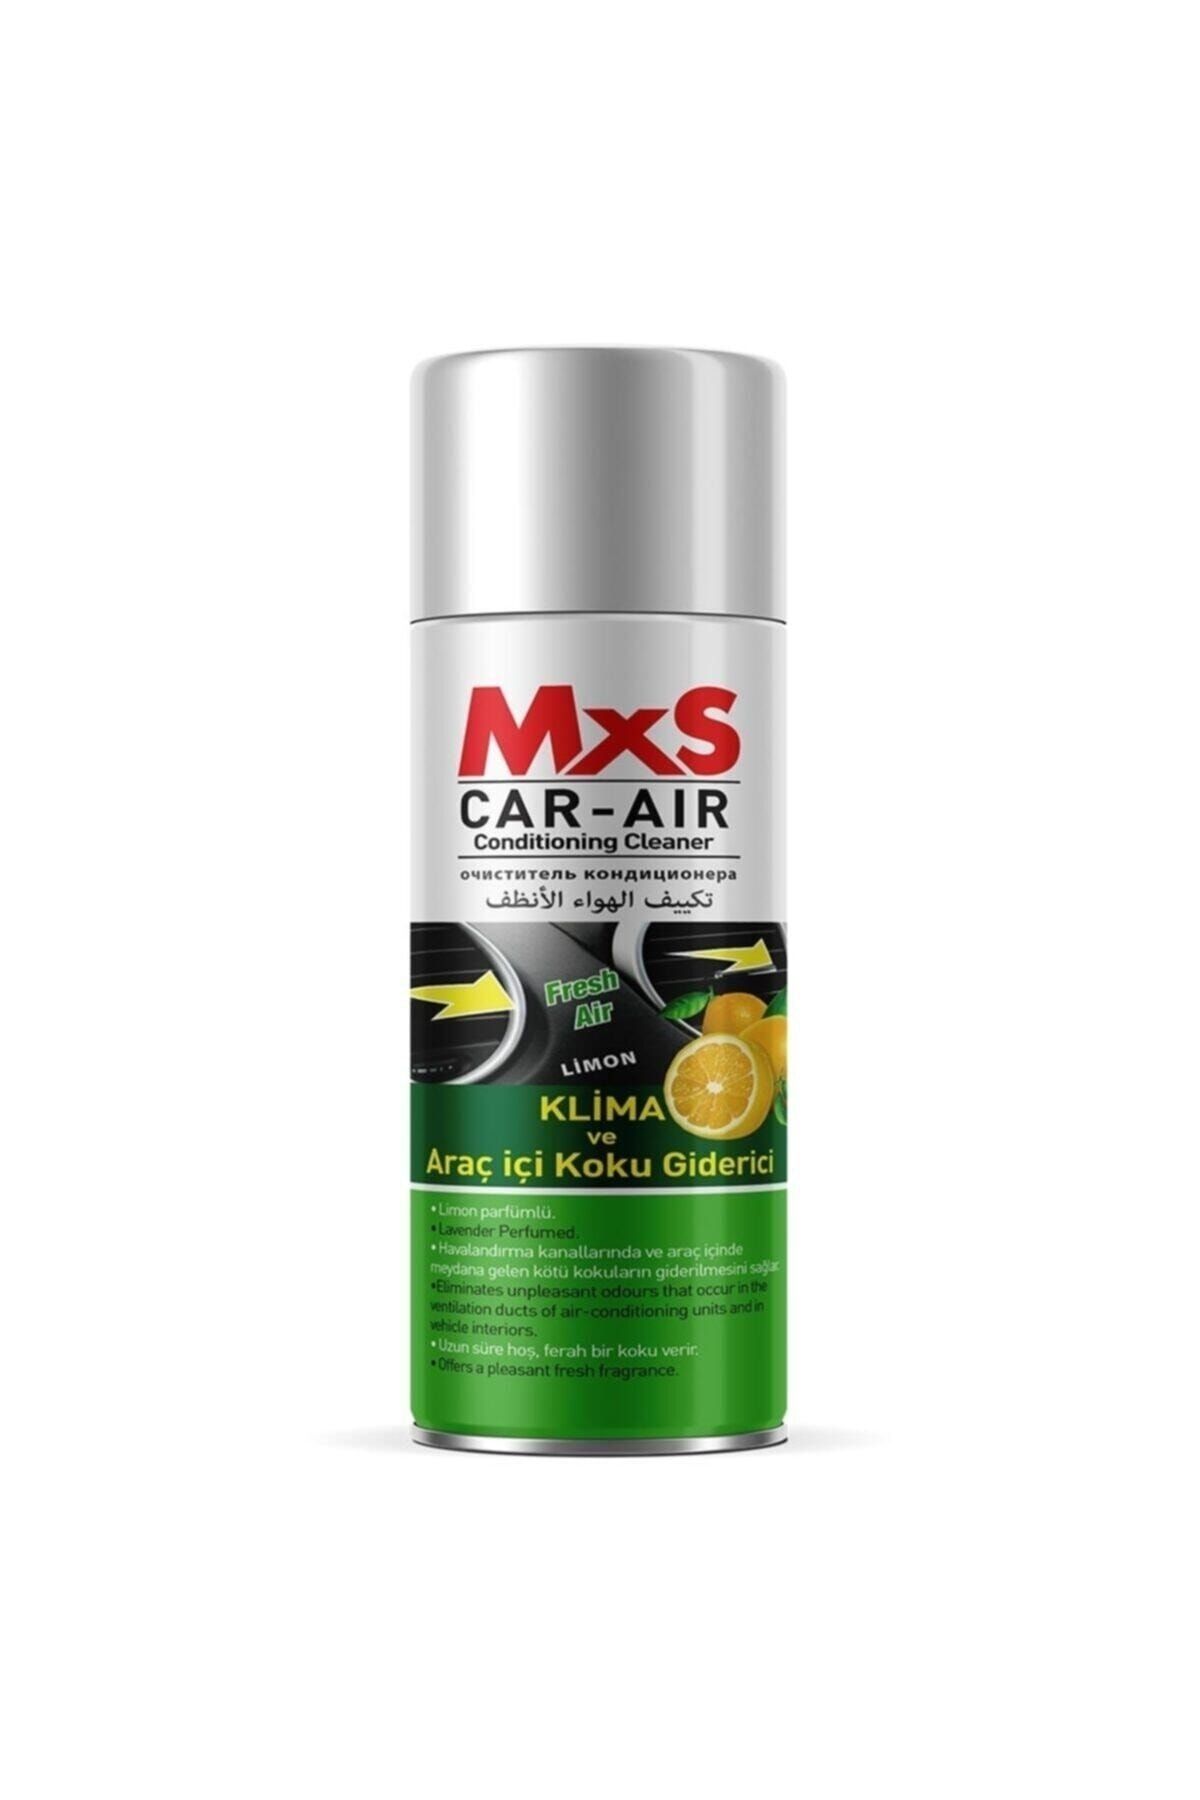 MxS Fresh Koku Bomba Araç Içi Ve Klima Koku Giderici Limon Kokulu 200 ml